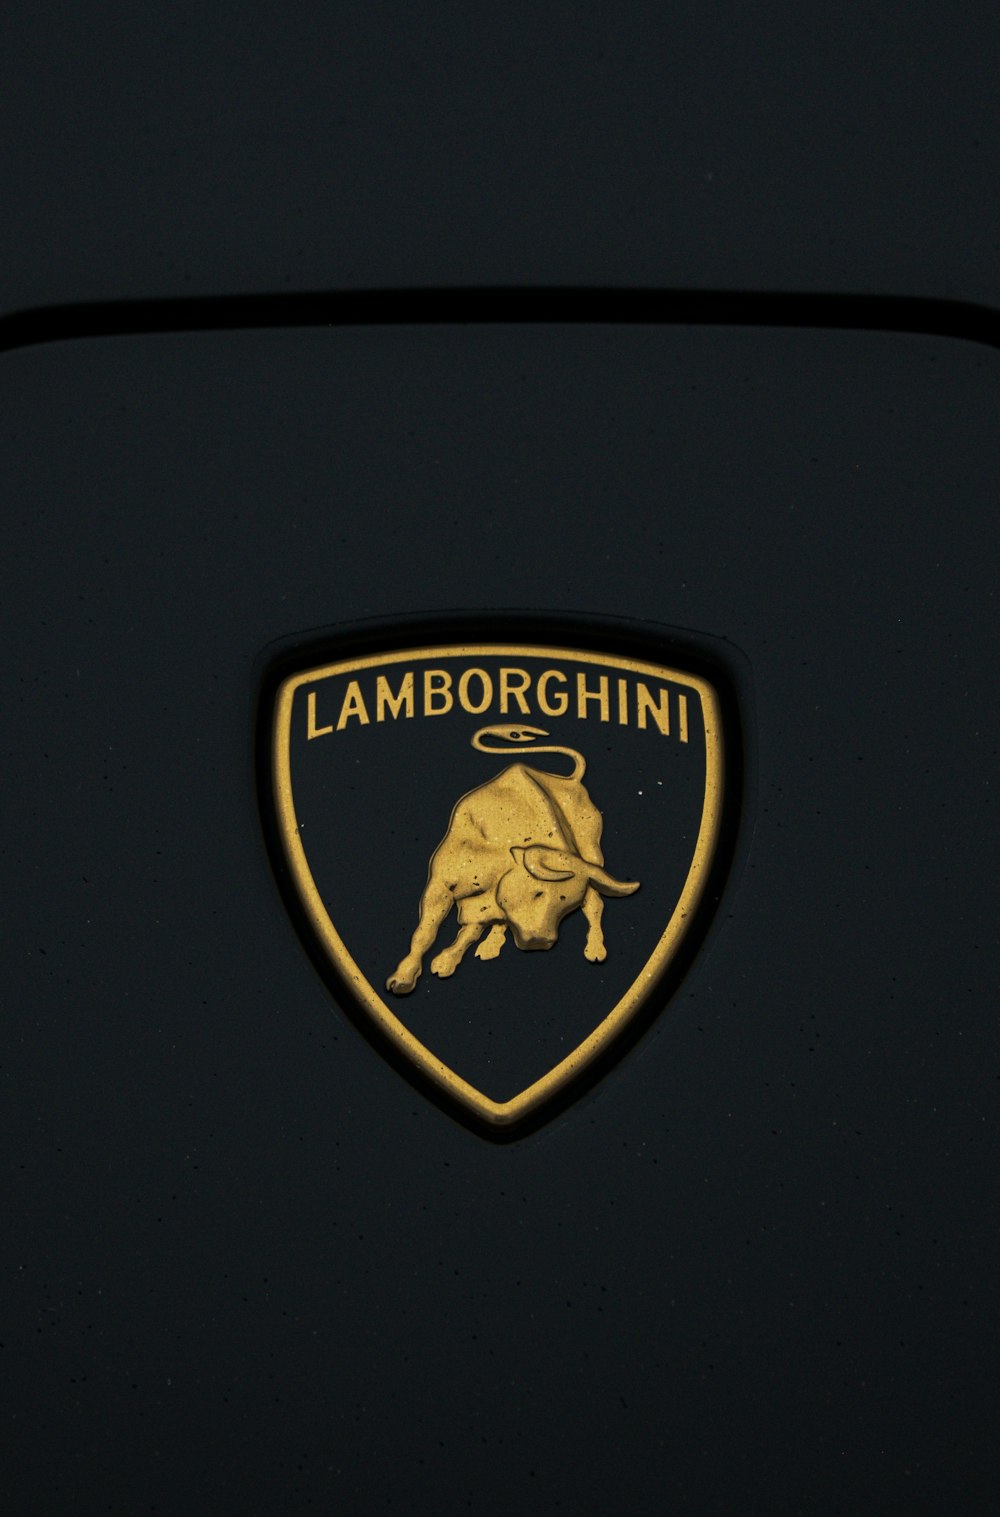 a close up of a lamb logo on a car